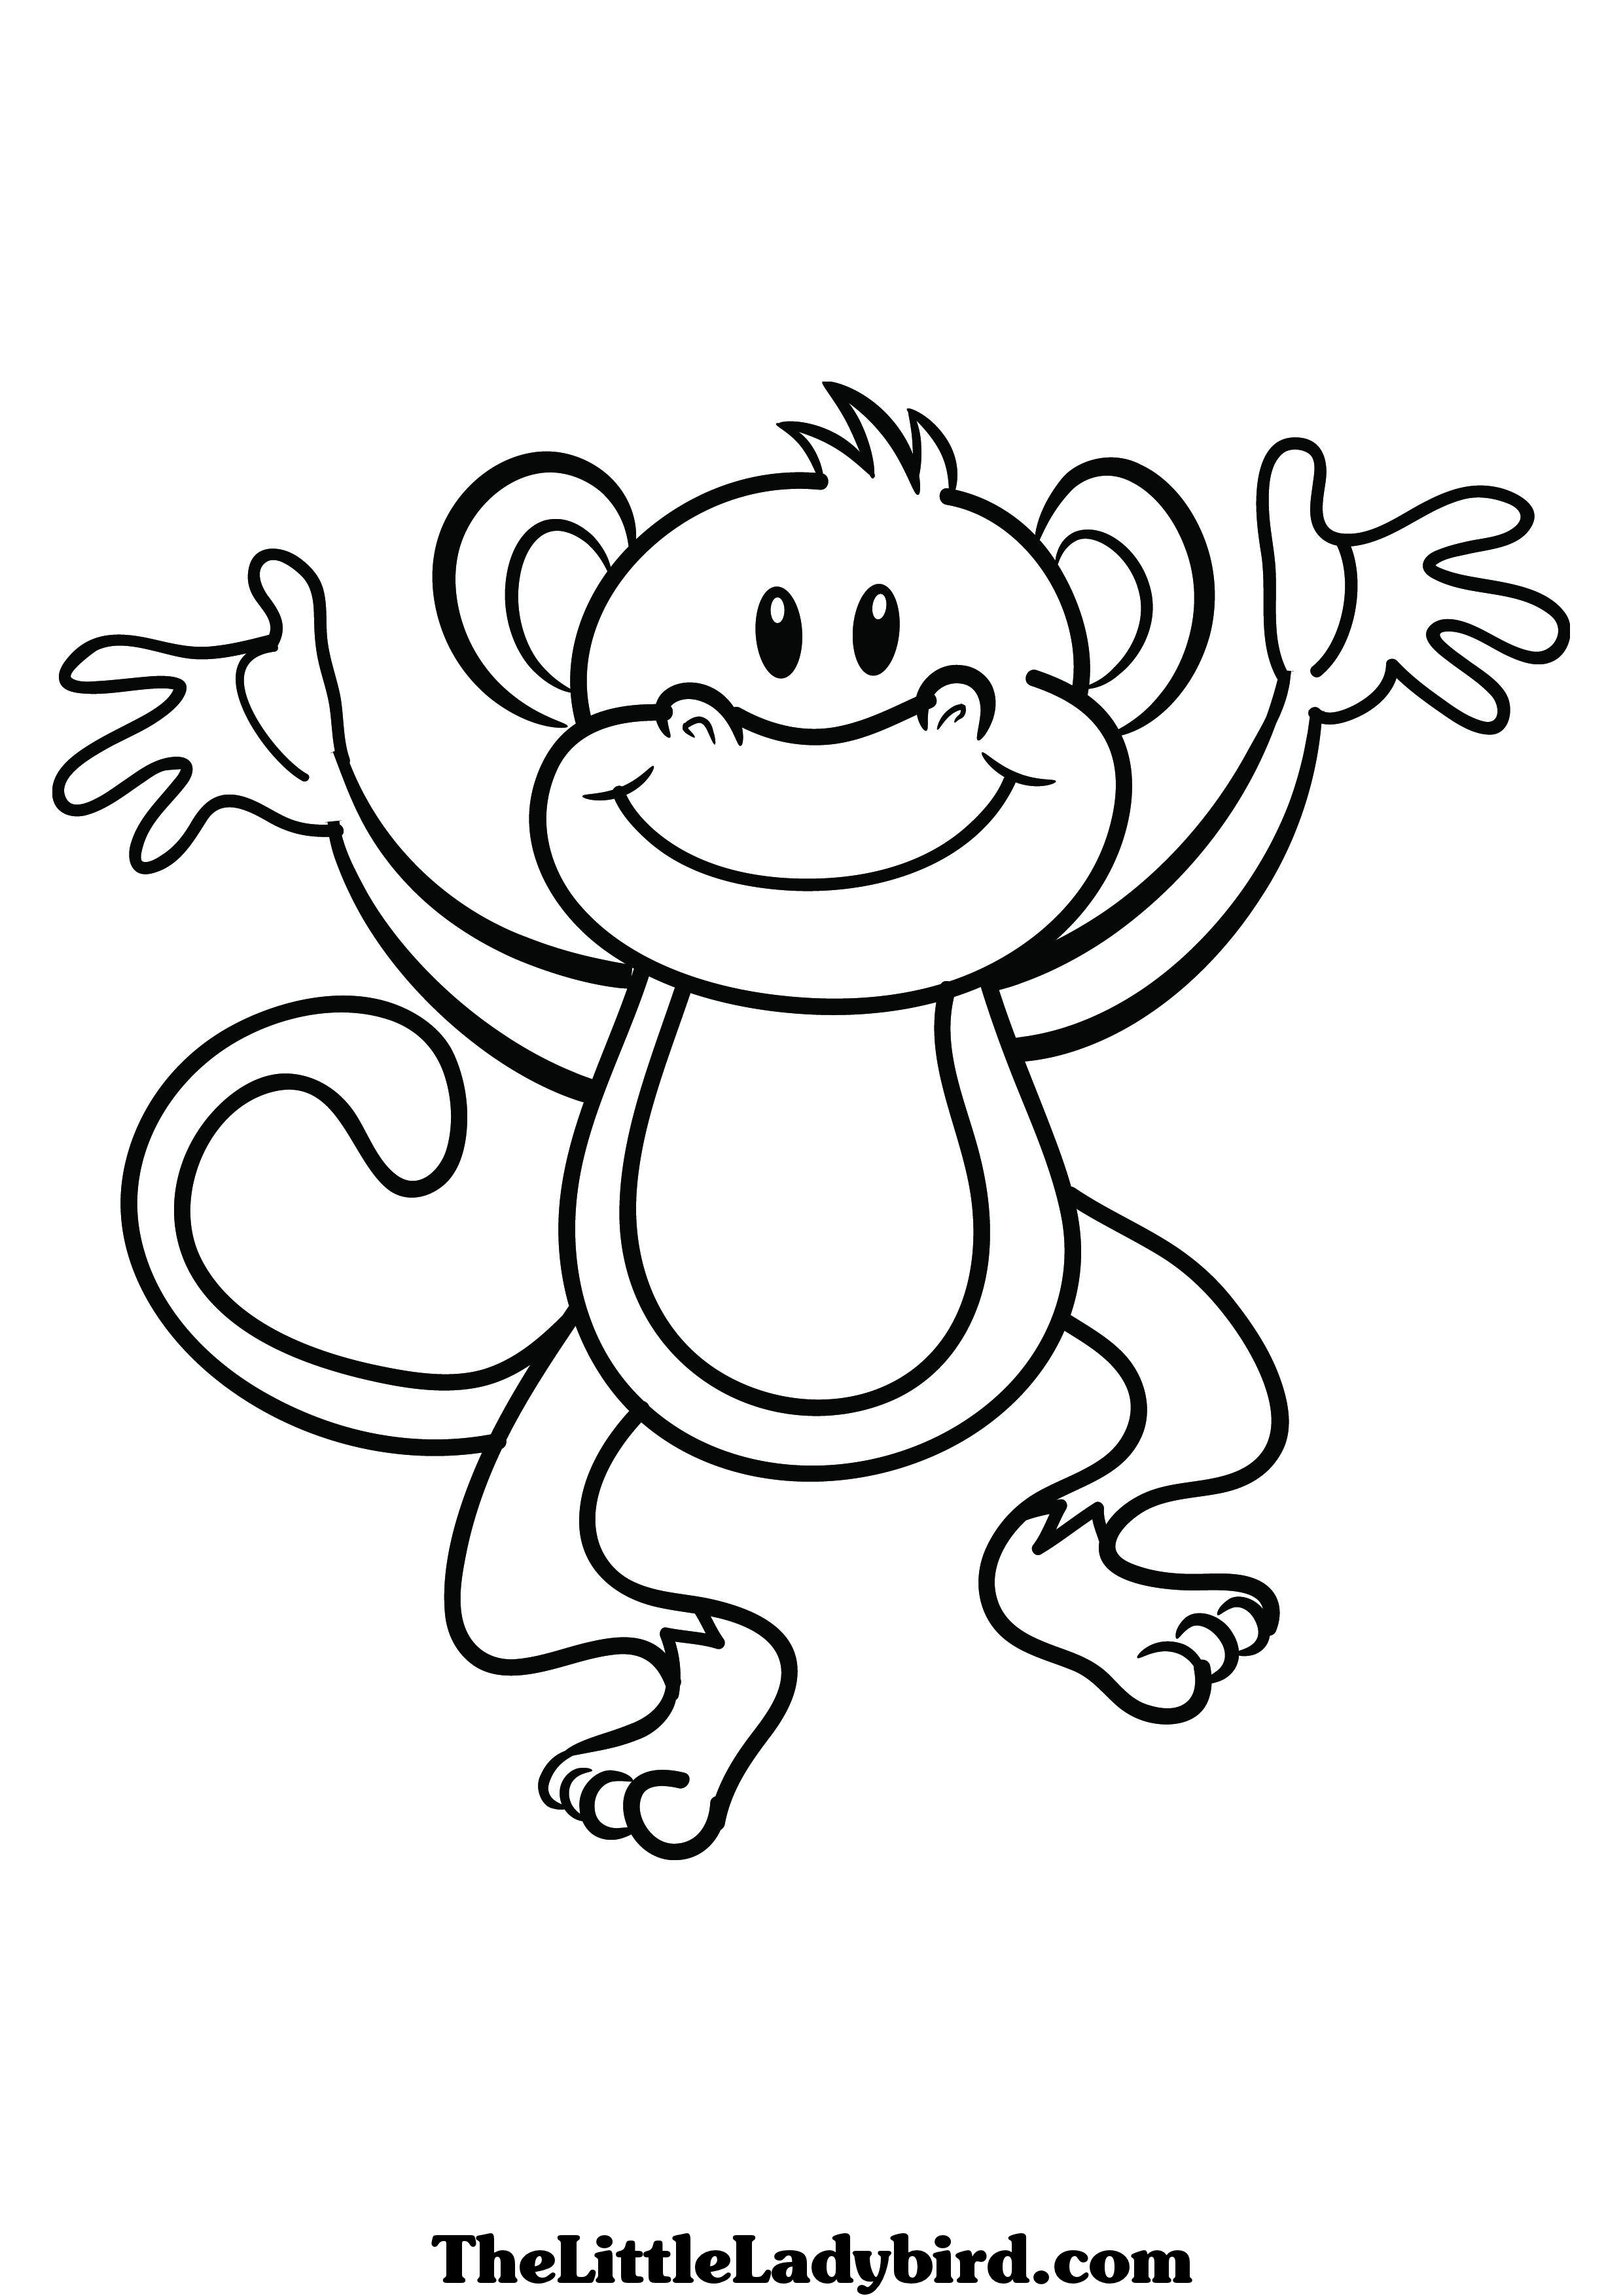 Desenhos para colorir com macacos - Desenhos para colorir